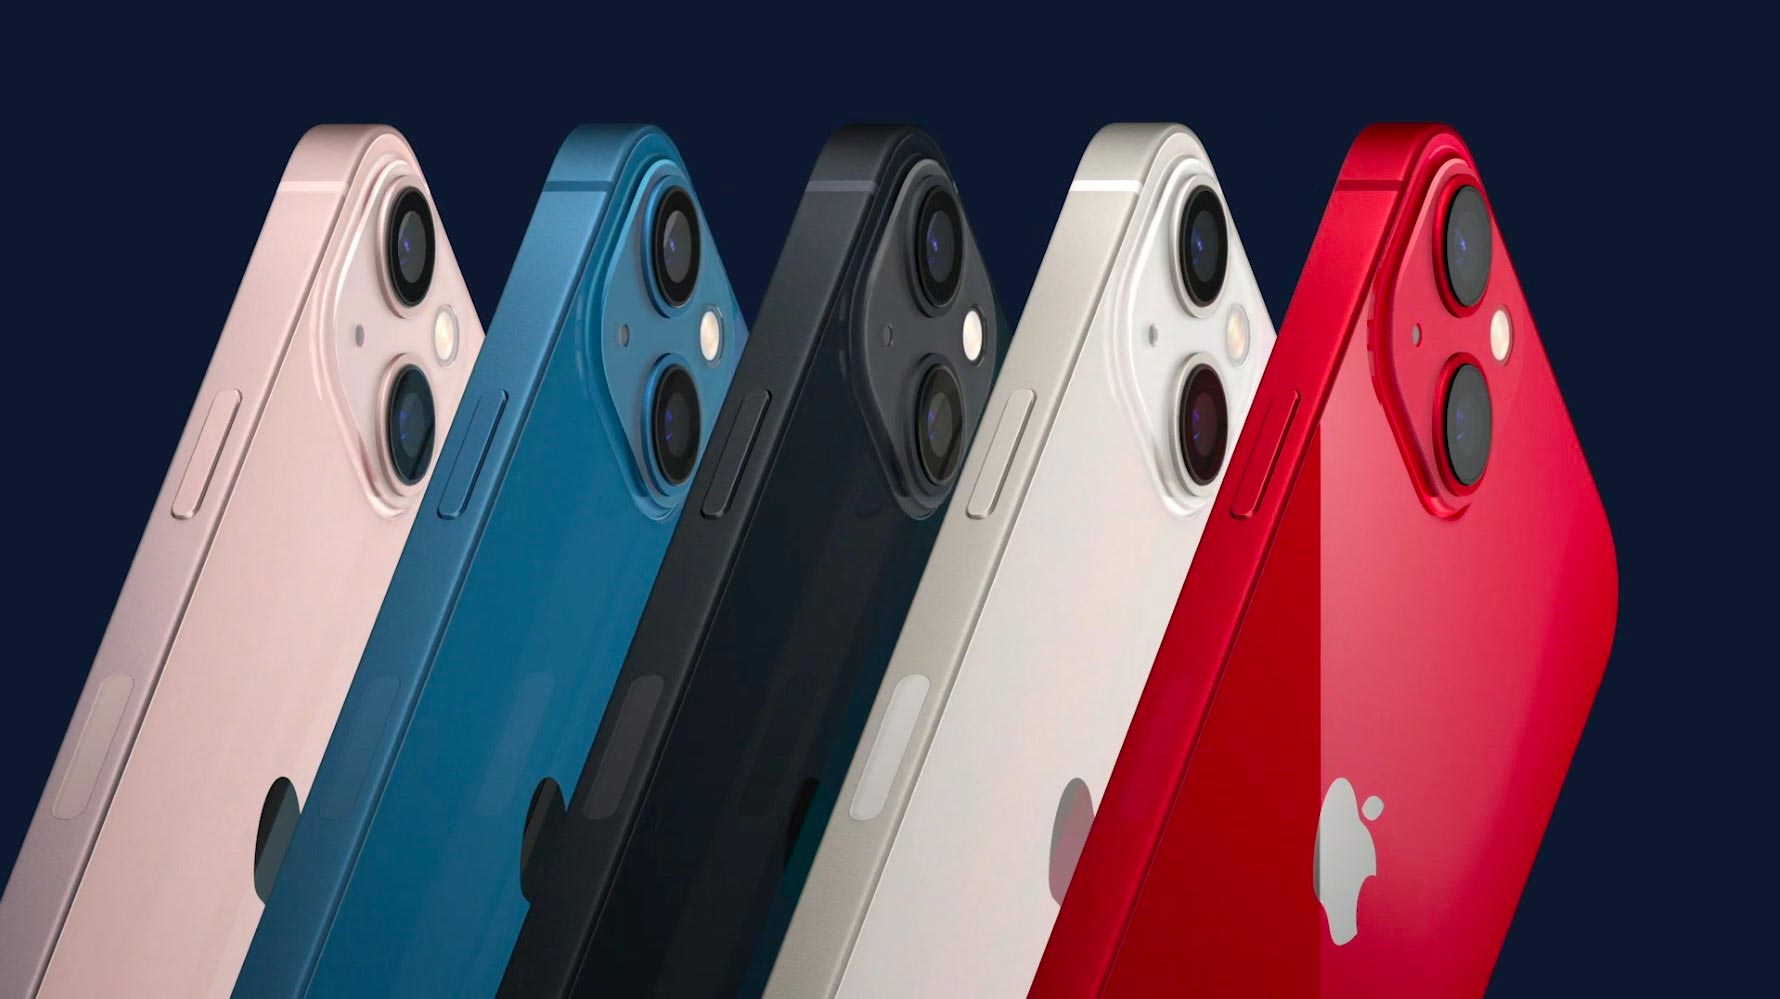 Apple đã ra mắt thế hệ iPhone 13 với 4 phiên bản: iPhone 13 mini, iPhone 13, iPhone 13 Pro và iPhone 13 Pro Max. Ảnh: @AFP.